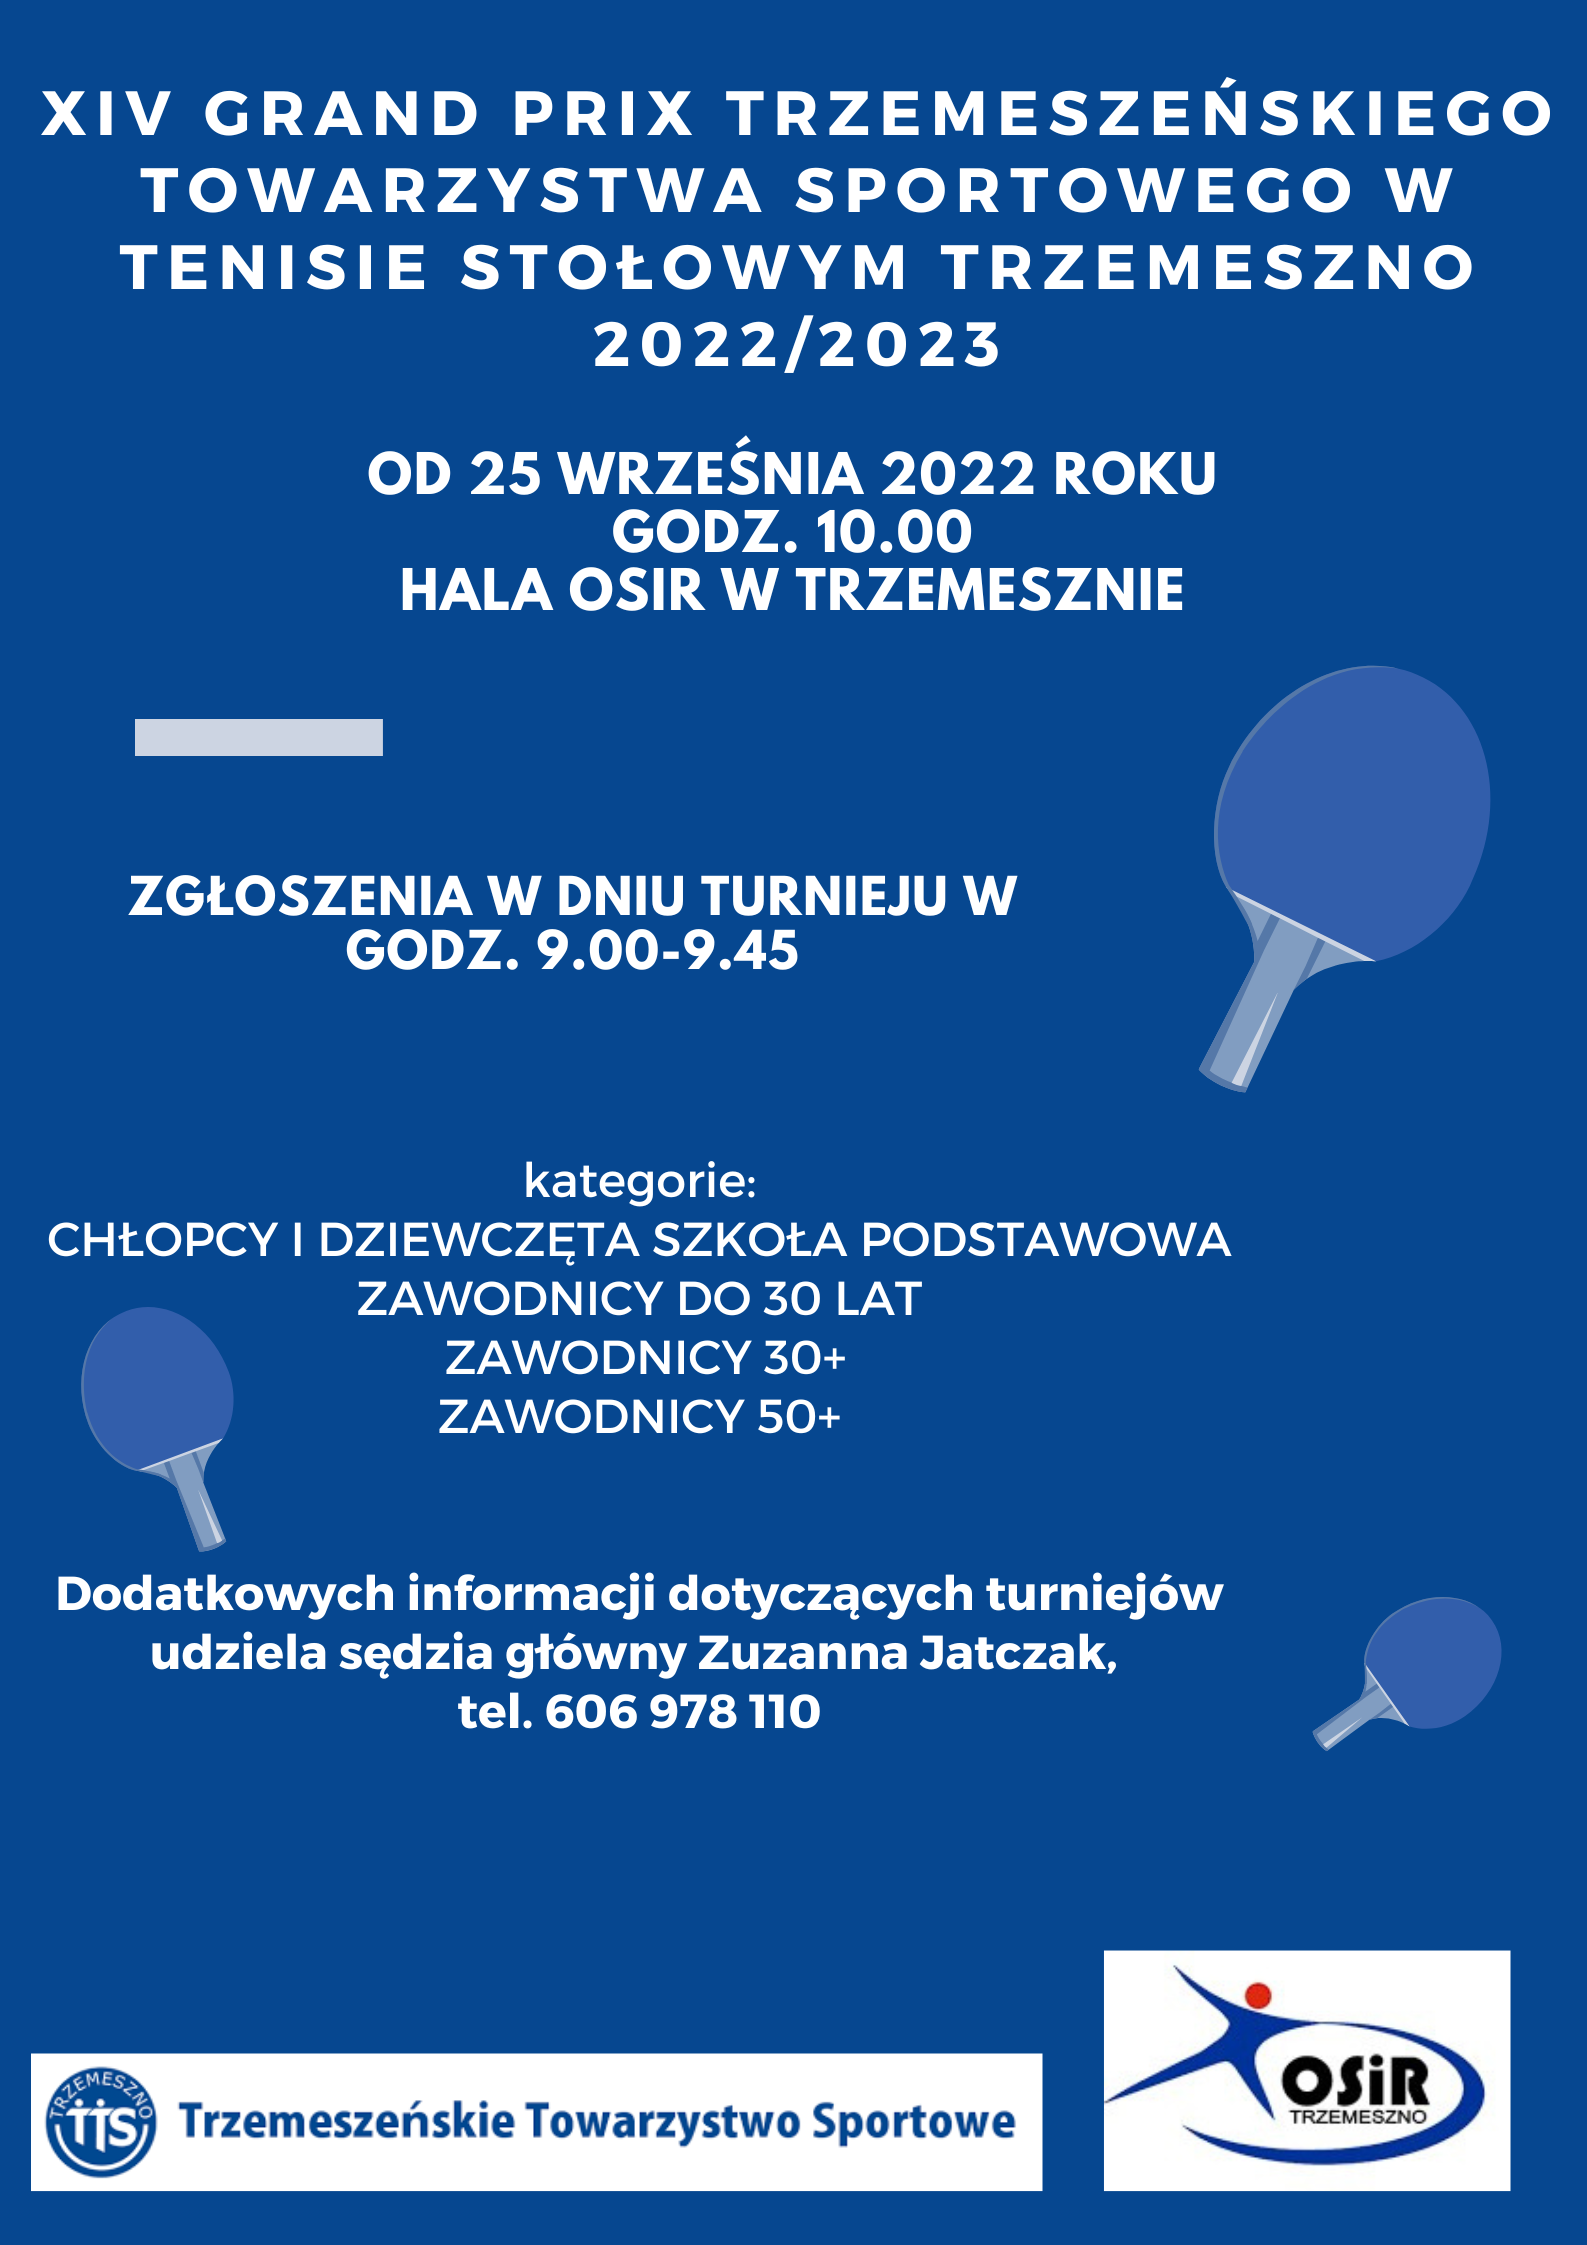 XIV Grand Prix Trzemeszeńskiego Towarzystwa Sportowego w tenisie stołowym Trzemeszno 2022/2023 @ HALA OSIR TRZEMESZNO